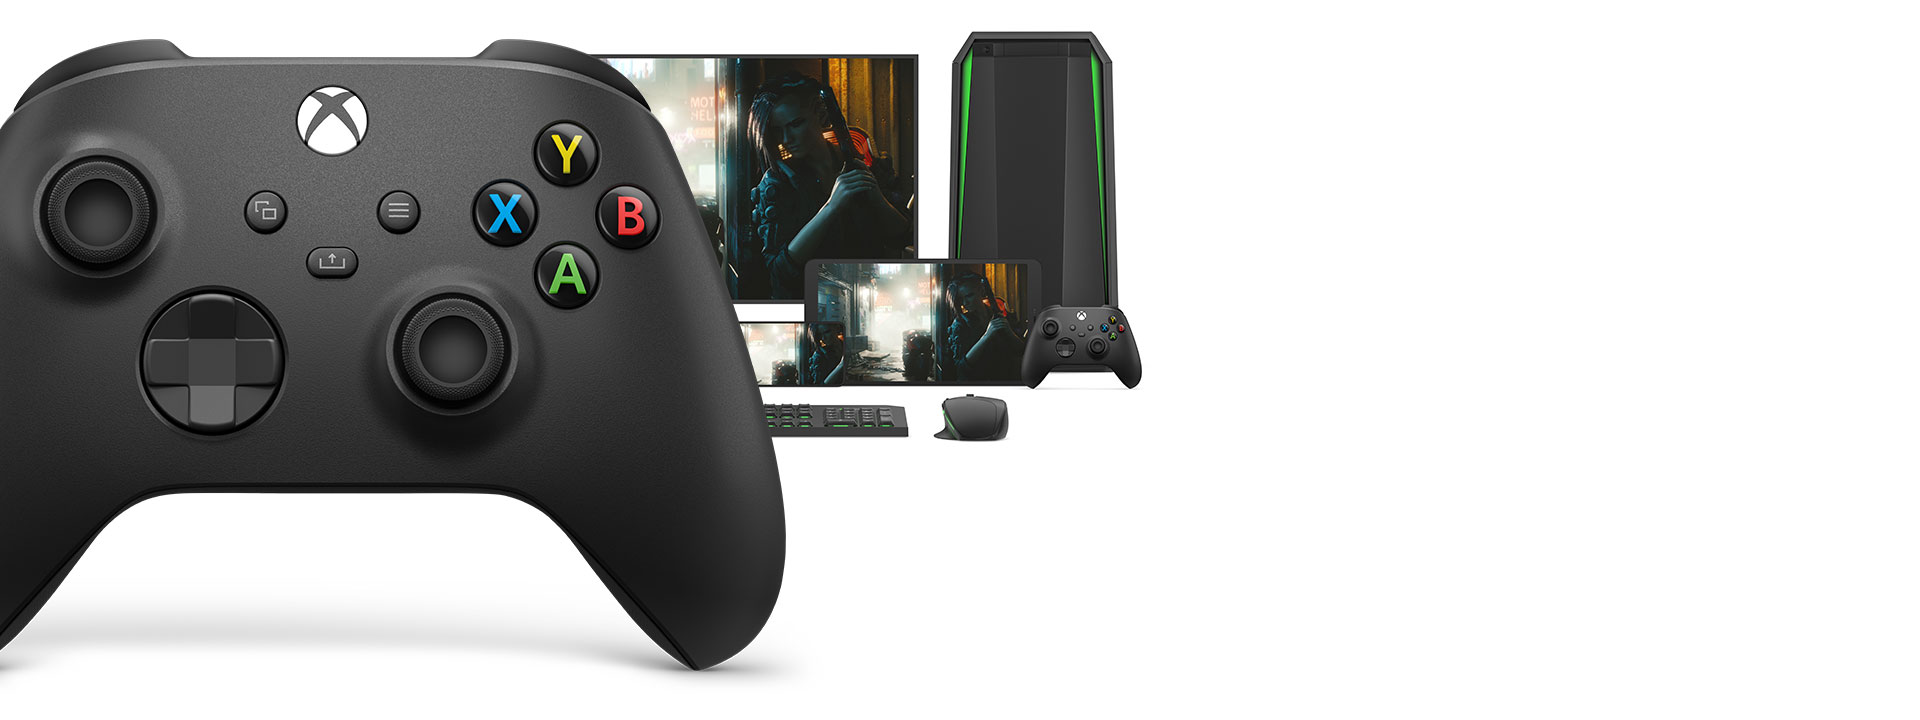 Mando inalámbrico Xbox delante de un equipo, monitor, tableta, mando inalámbrico Xbox, ratón y teclado